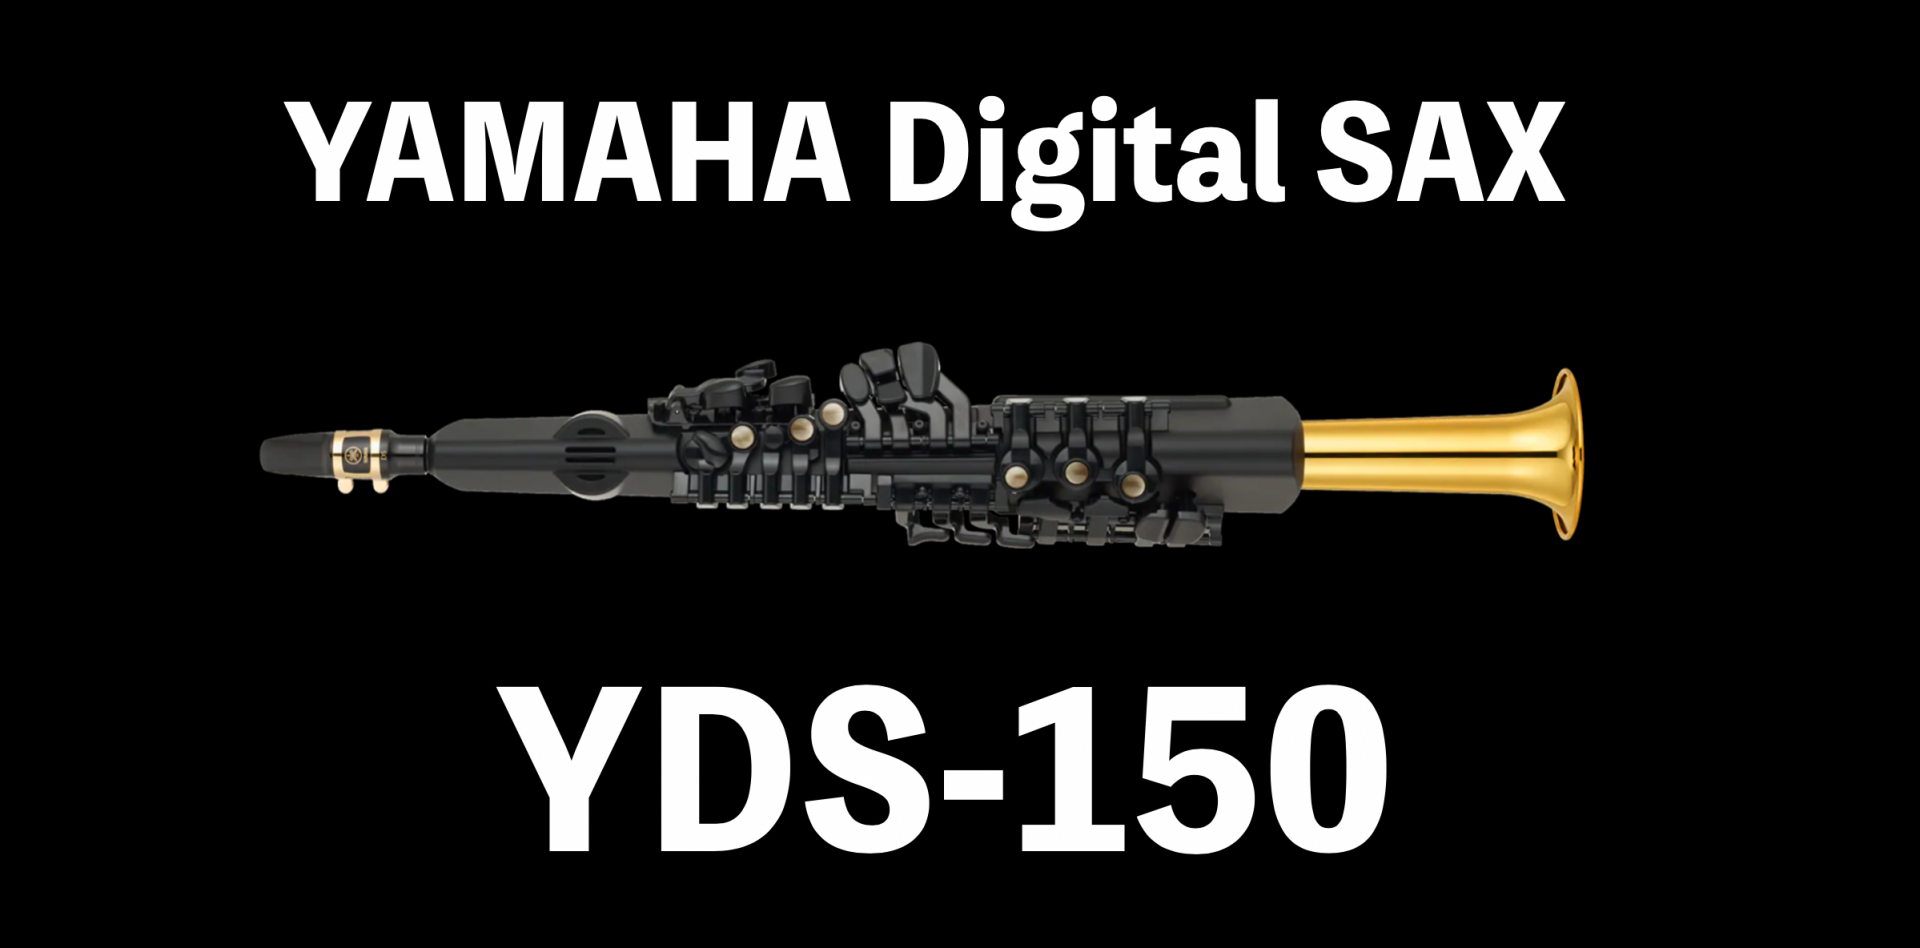 ヤマハ電子サックスYDS-150